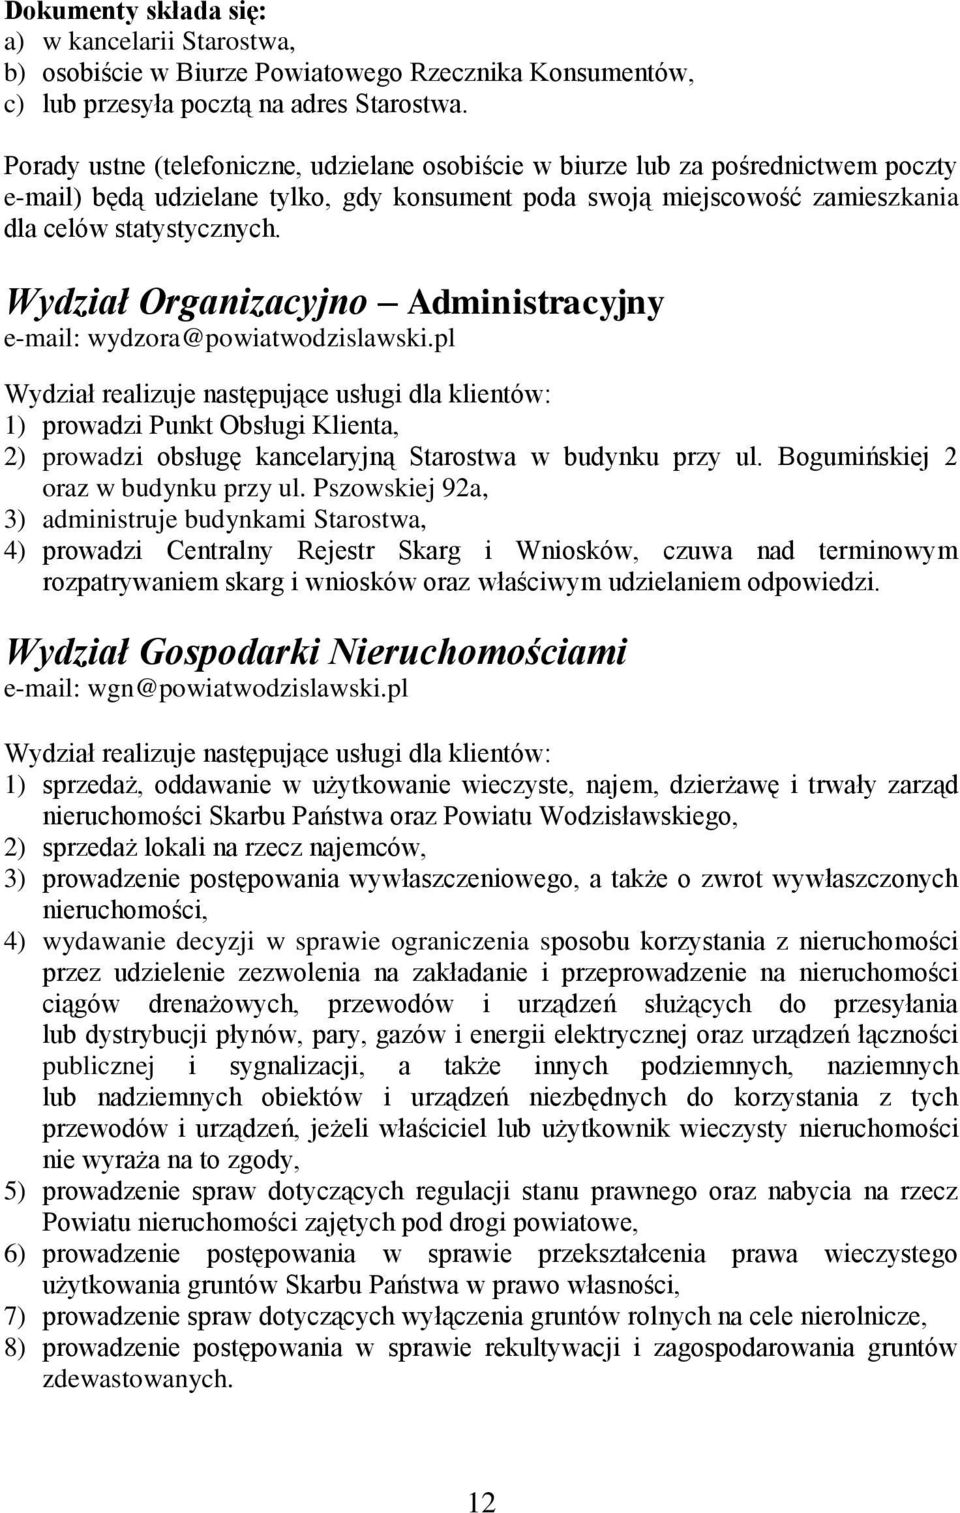 Wydział Organizacyjno Administracyjny e-mail: wydzora@powiatwodzislawski.